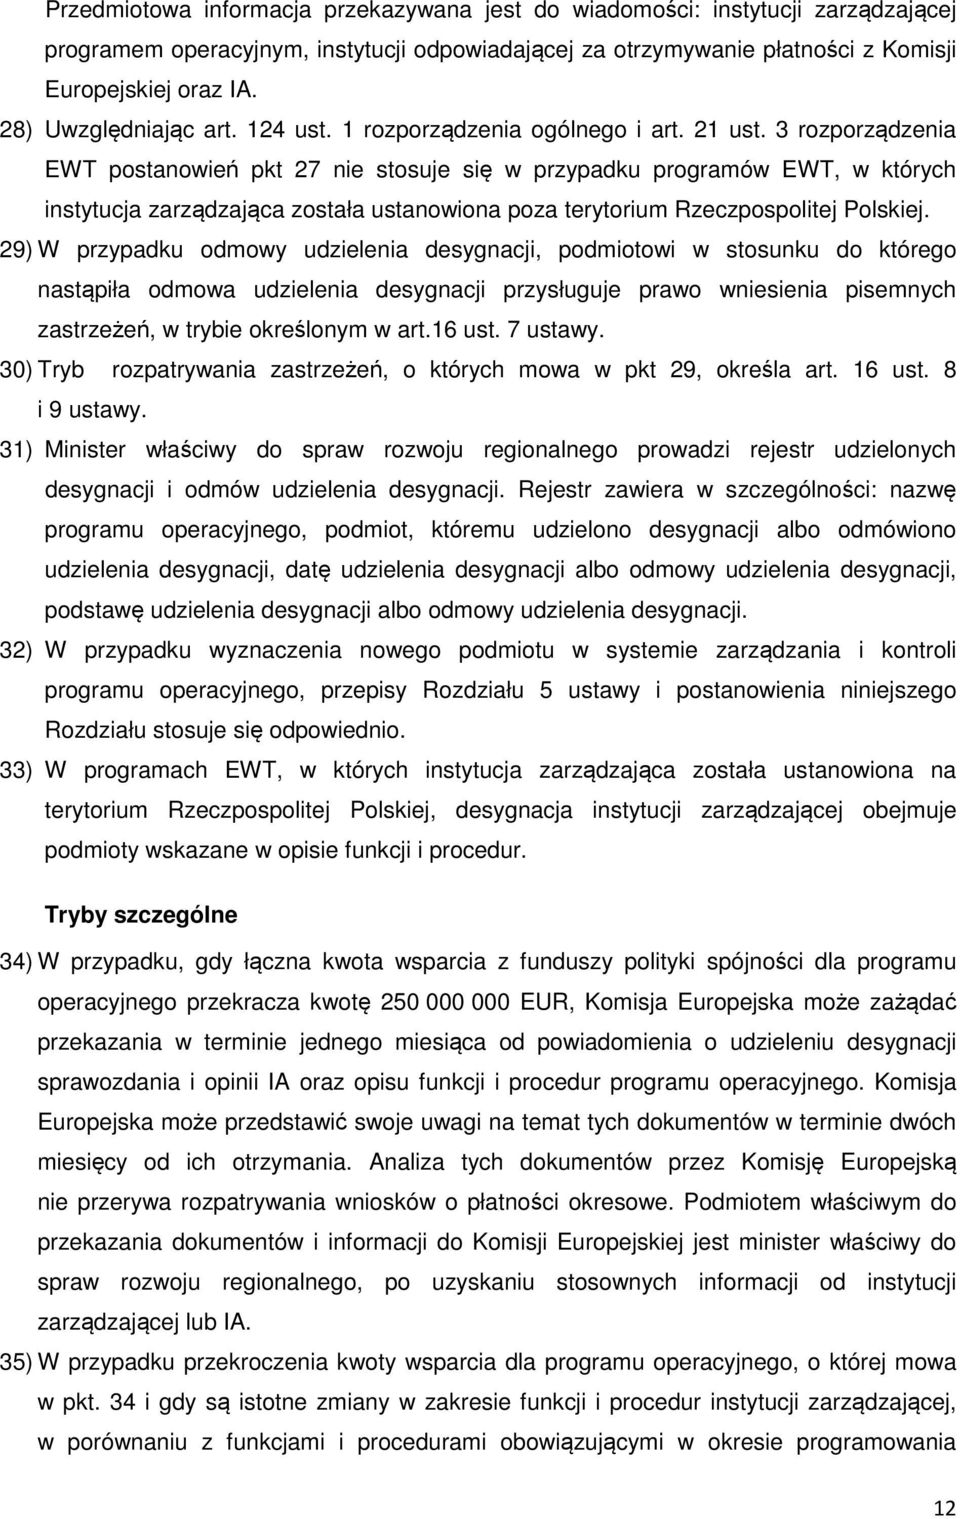 3 rozporządzenia EWT postanowień pkt 27 nie stosuje się w przypadku programów EWT, w których instytucja zarządzająca została ustanowiona poza terytorium Rzeczpospolitej Polskiej.